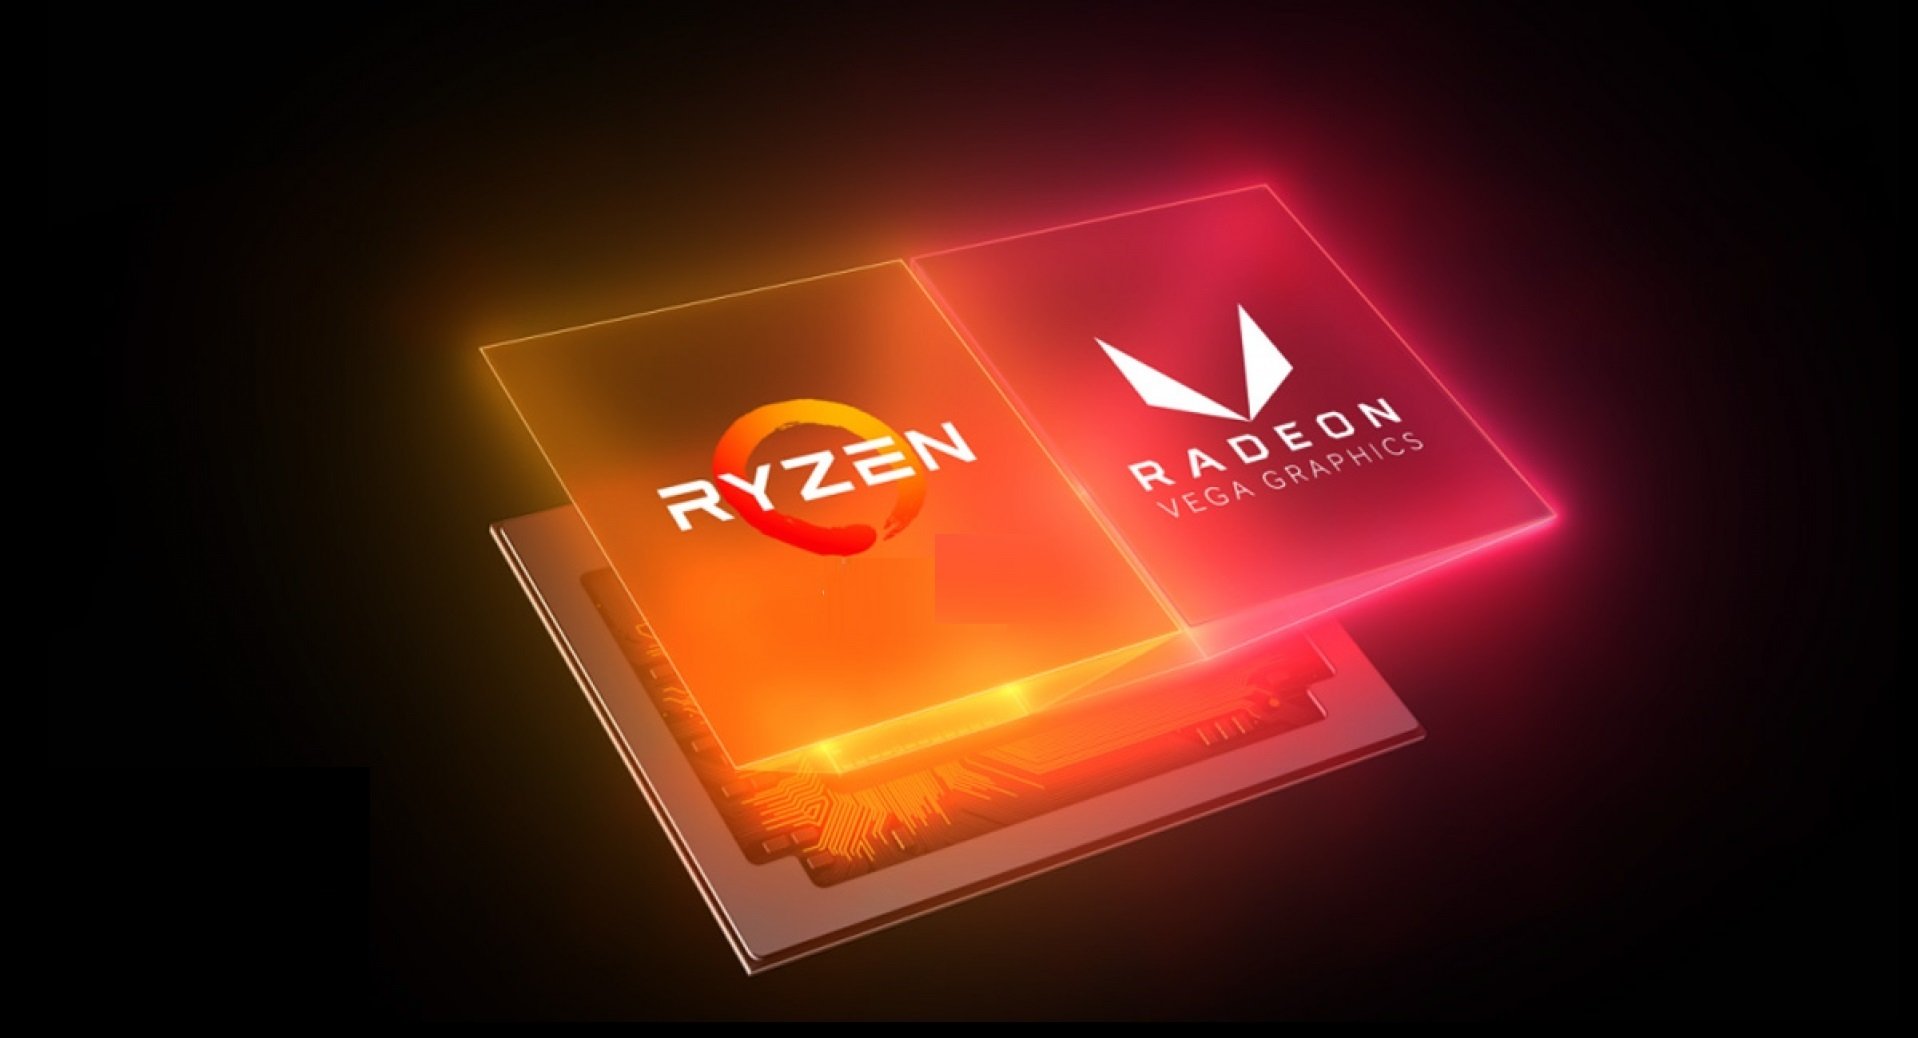 AMD stellt auf der CES 2022 neue CPUs und GPUs vor